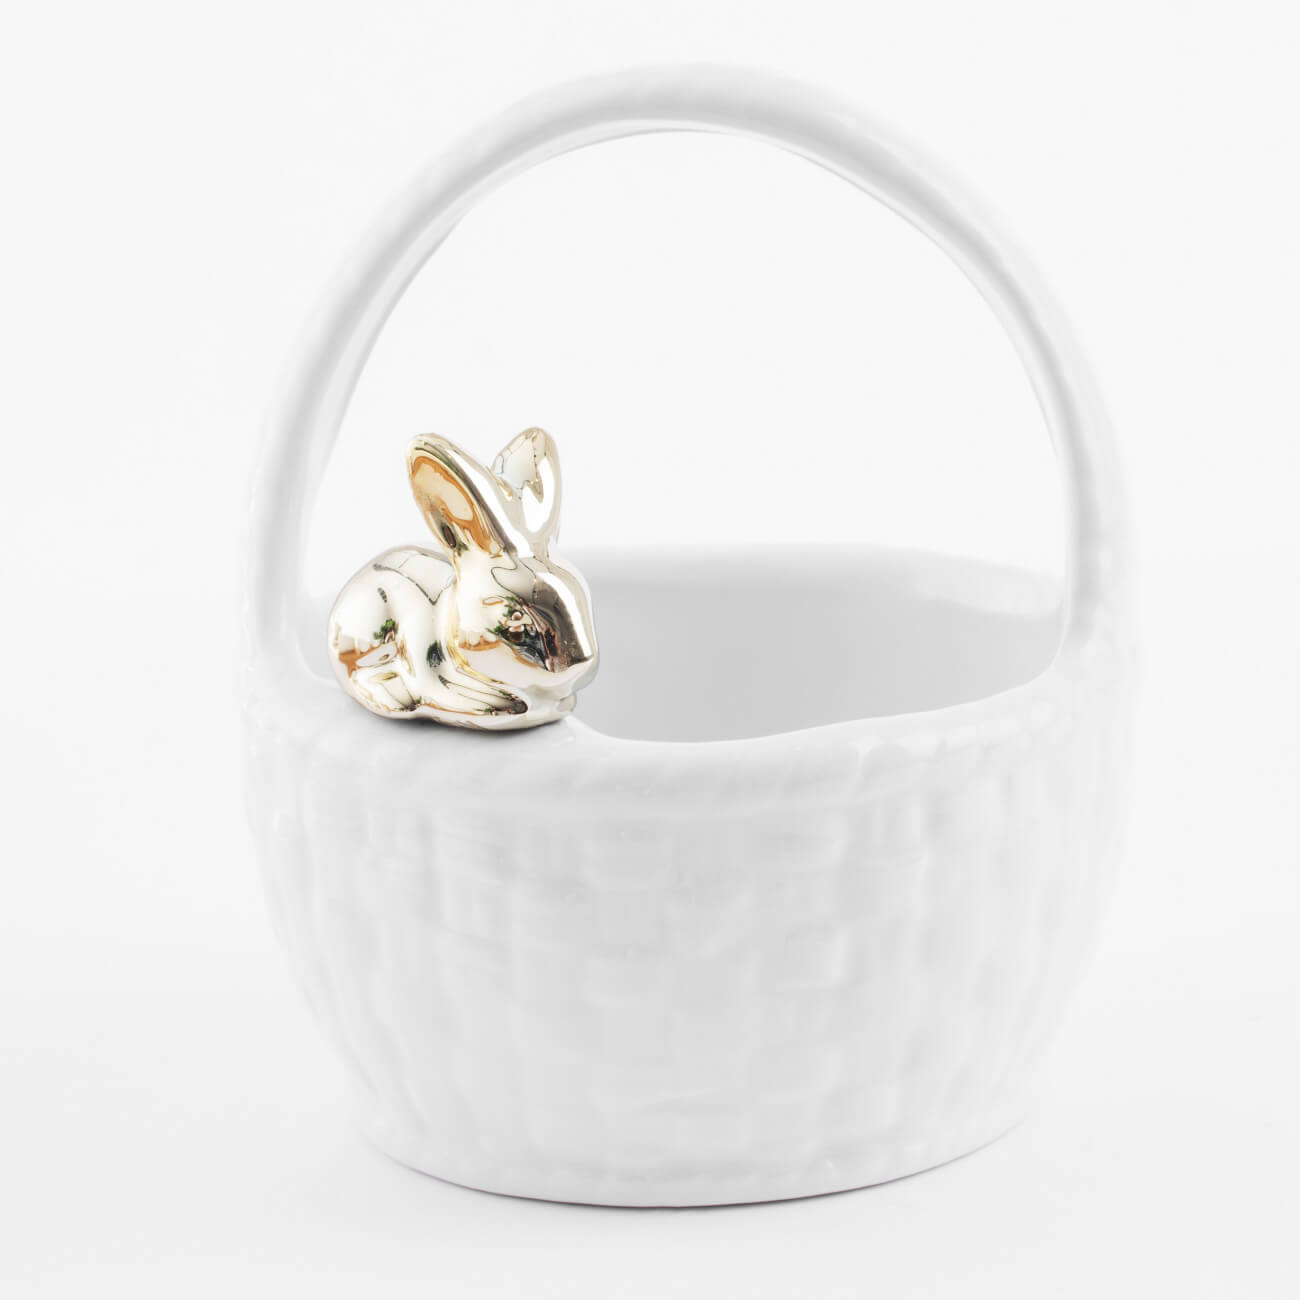 Конфетница, 12х14 см, с ручкой, керамика, белая, Кролик на корзине, Easter gold емкость для хранения 17х14 см 1 5 л с ручкой керамика молочная перламутр кролик easter